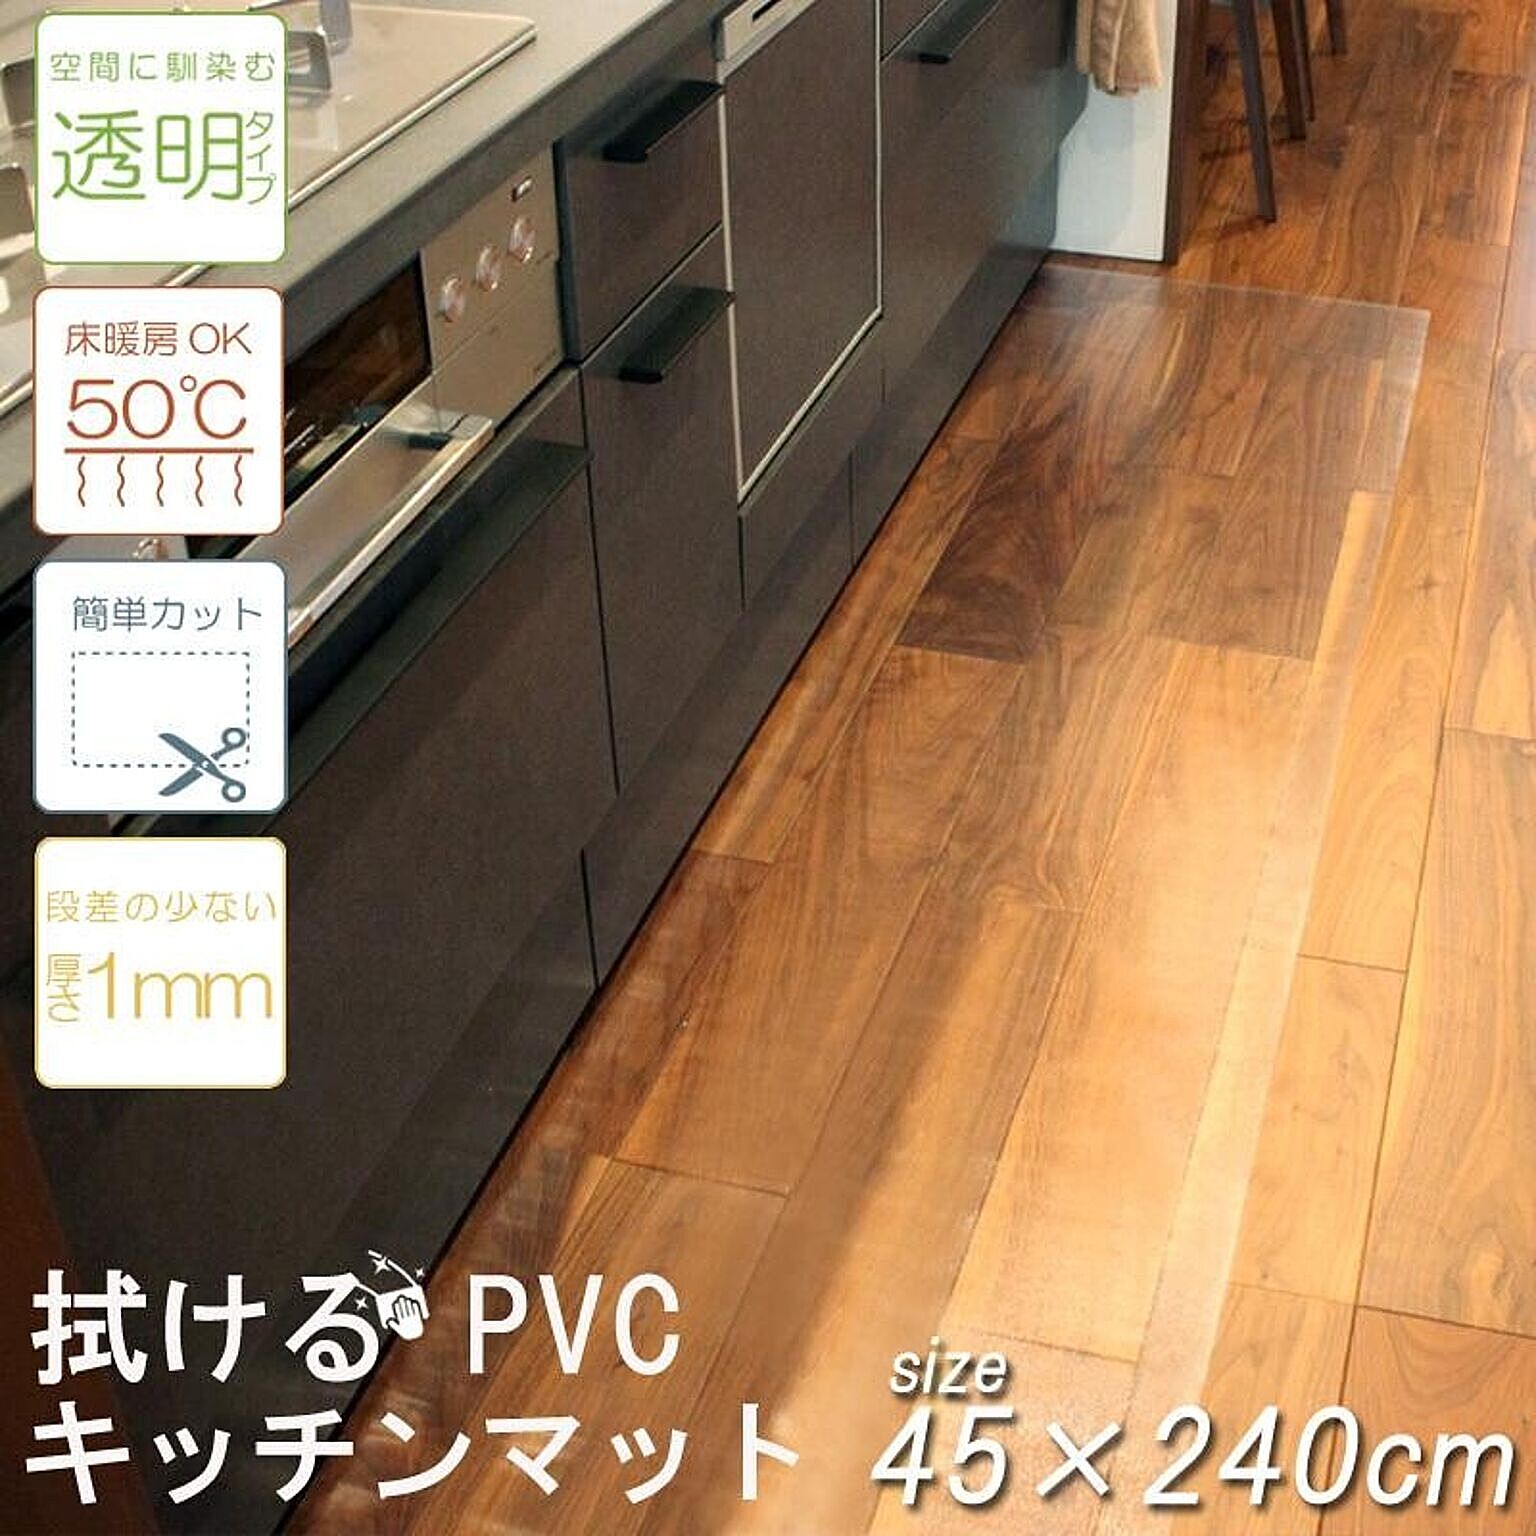 キッチンマット PVC 大判 クリア 45×240 床暖房対応 カット可能